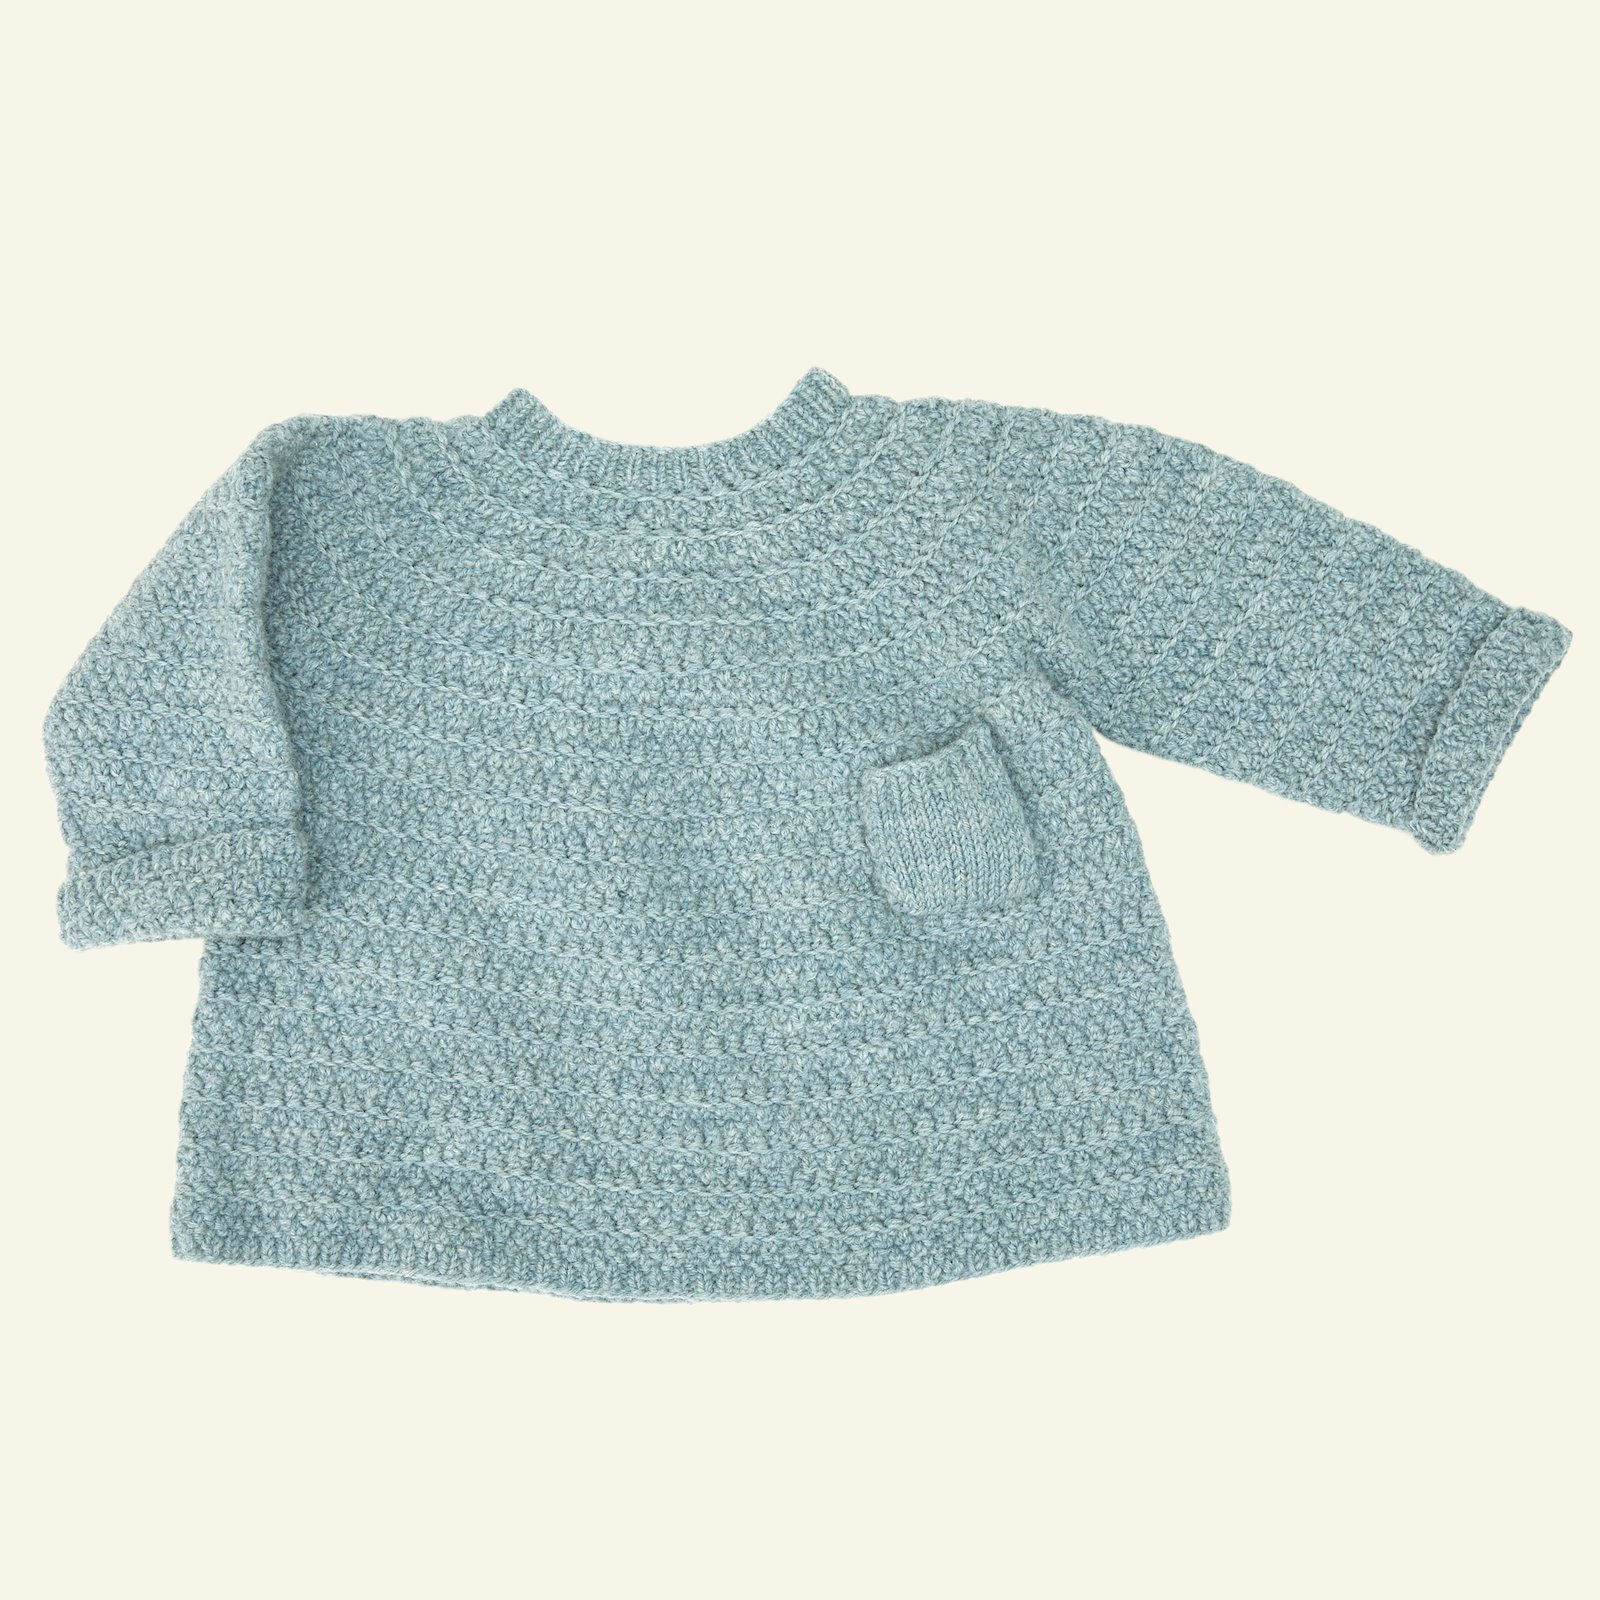 FRAYA strikkeopskrift - Huggable Me Sweater, børn & baby 90054506_fraya6001_sskit